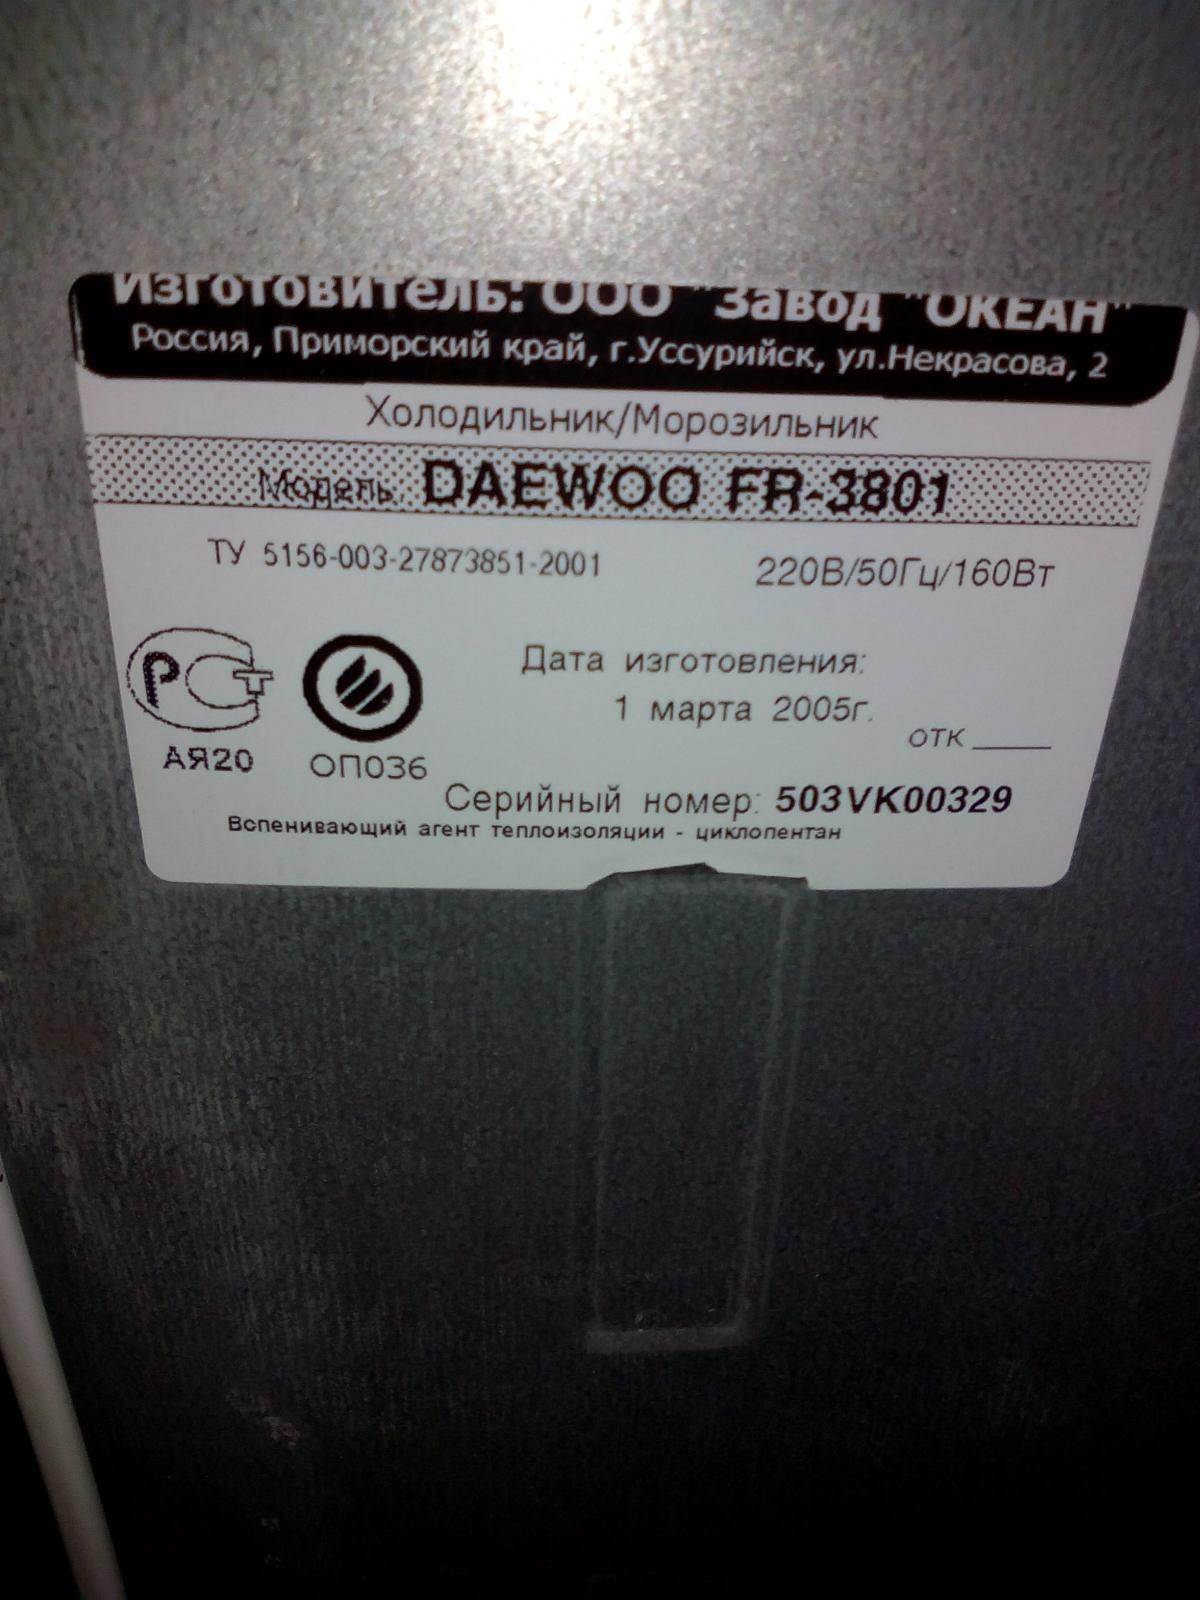 Технические характеристики холодильник Daewoo fr3801